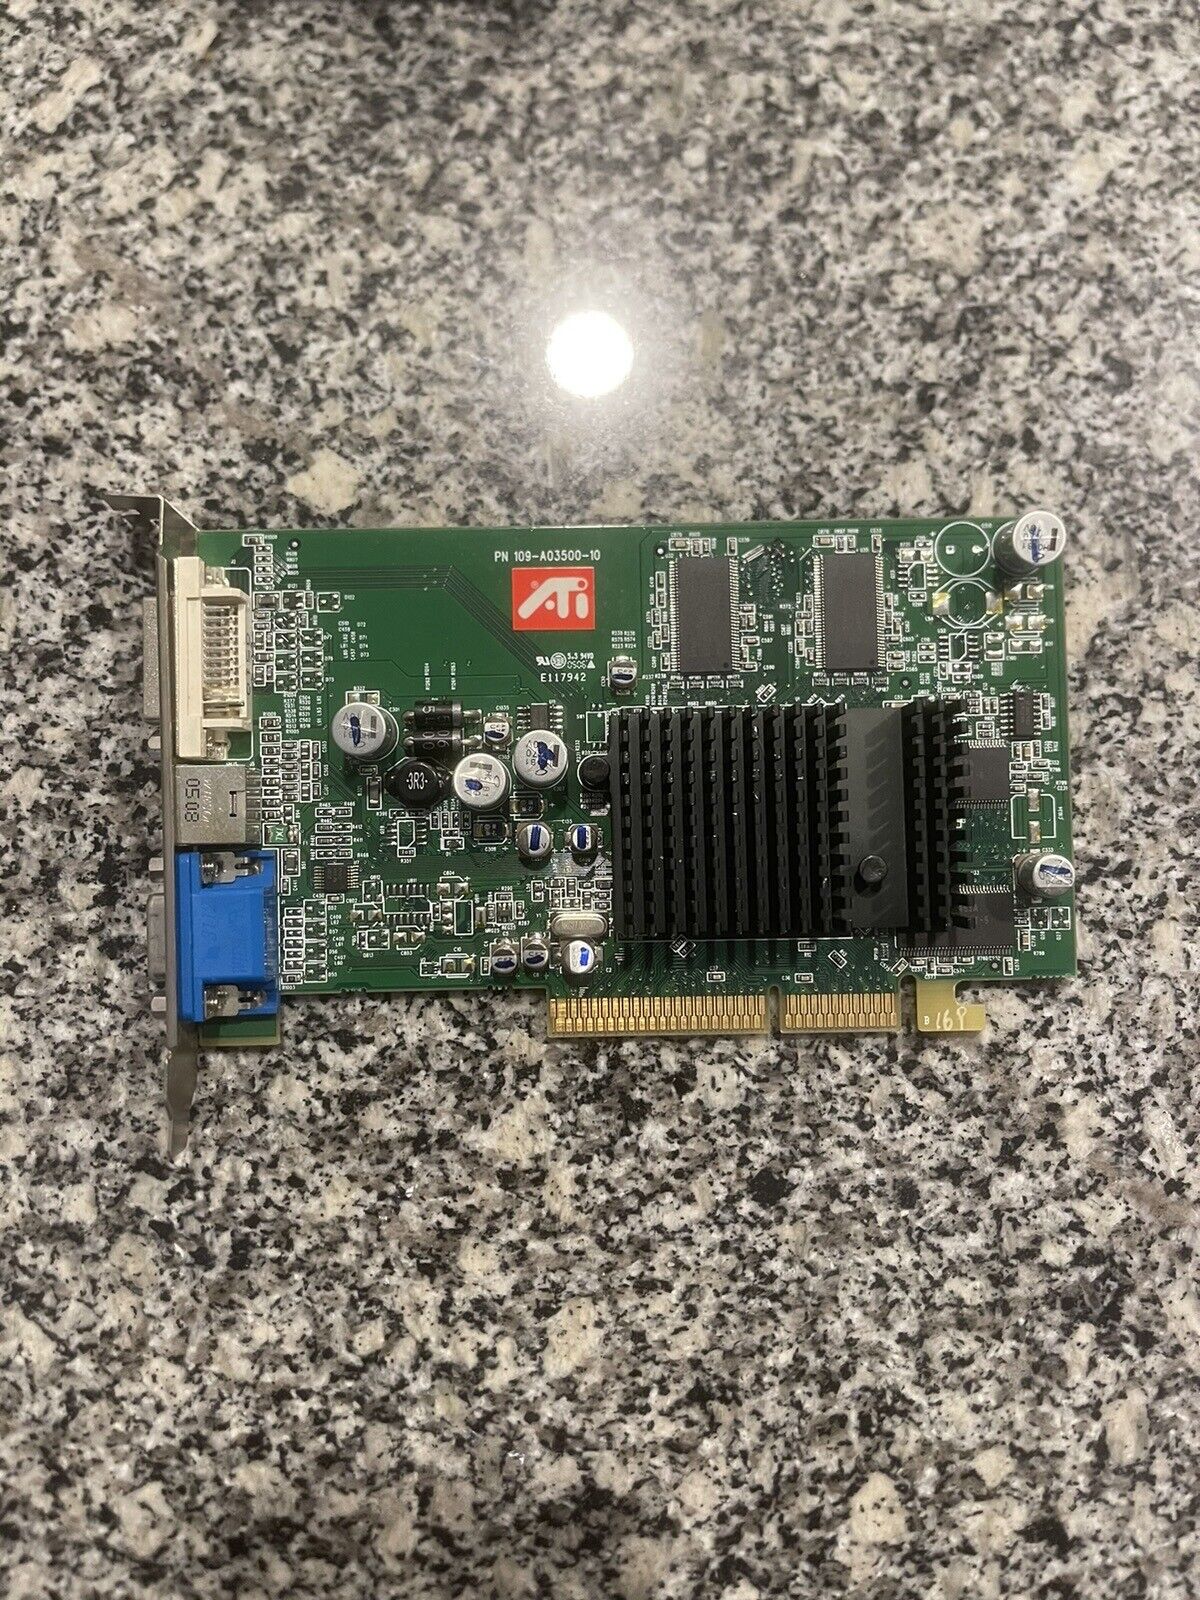 ATI Radeon 9550 AGP Video Card 109-A03500-10